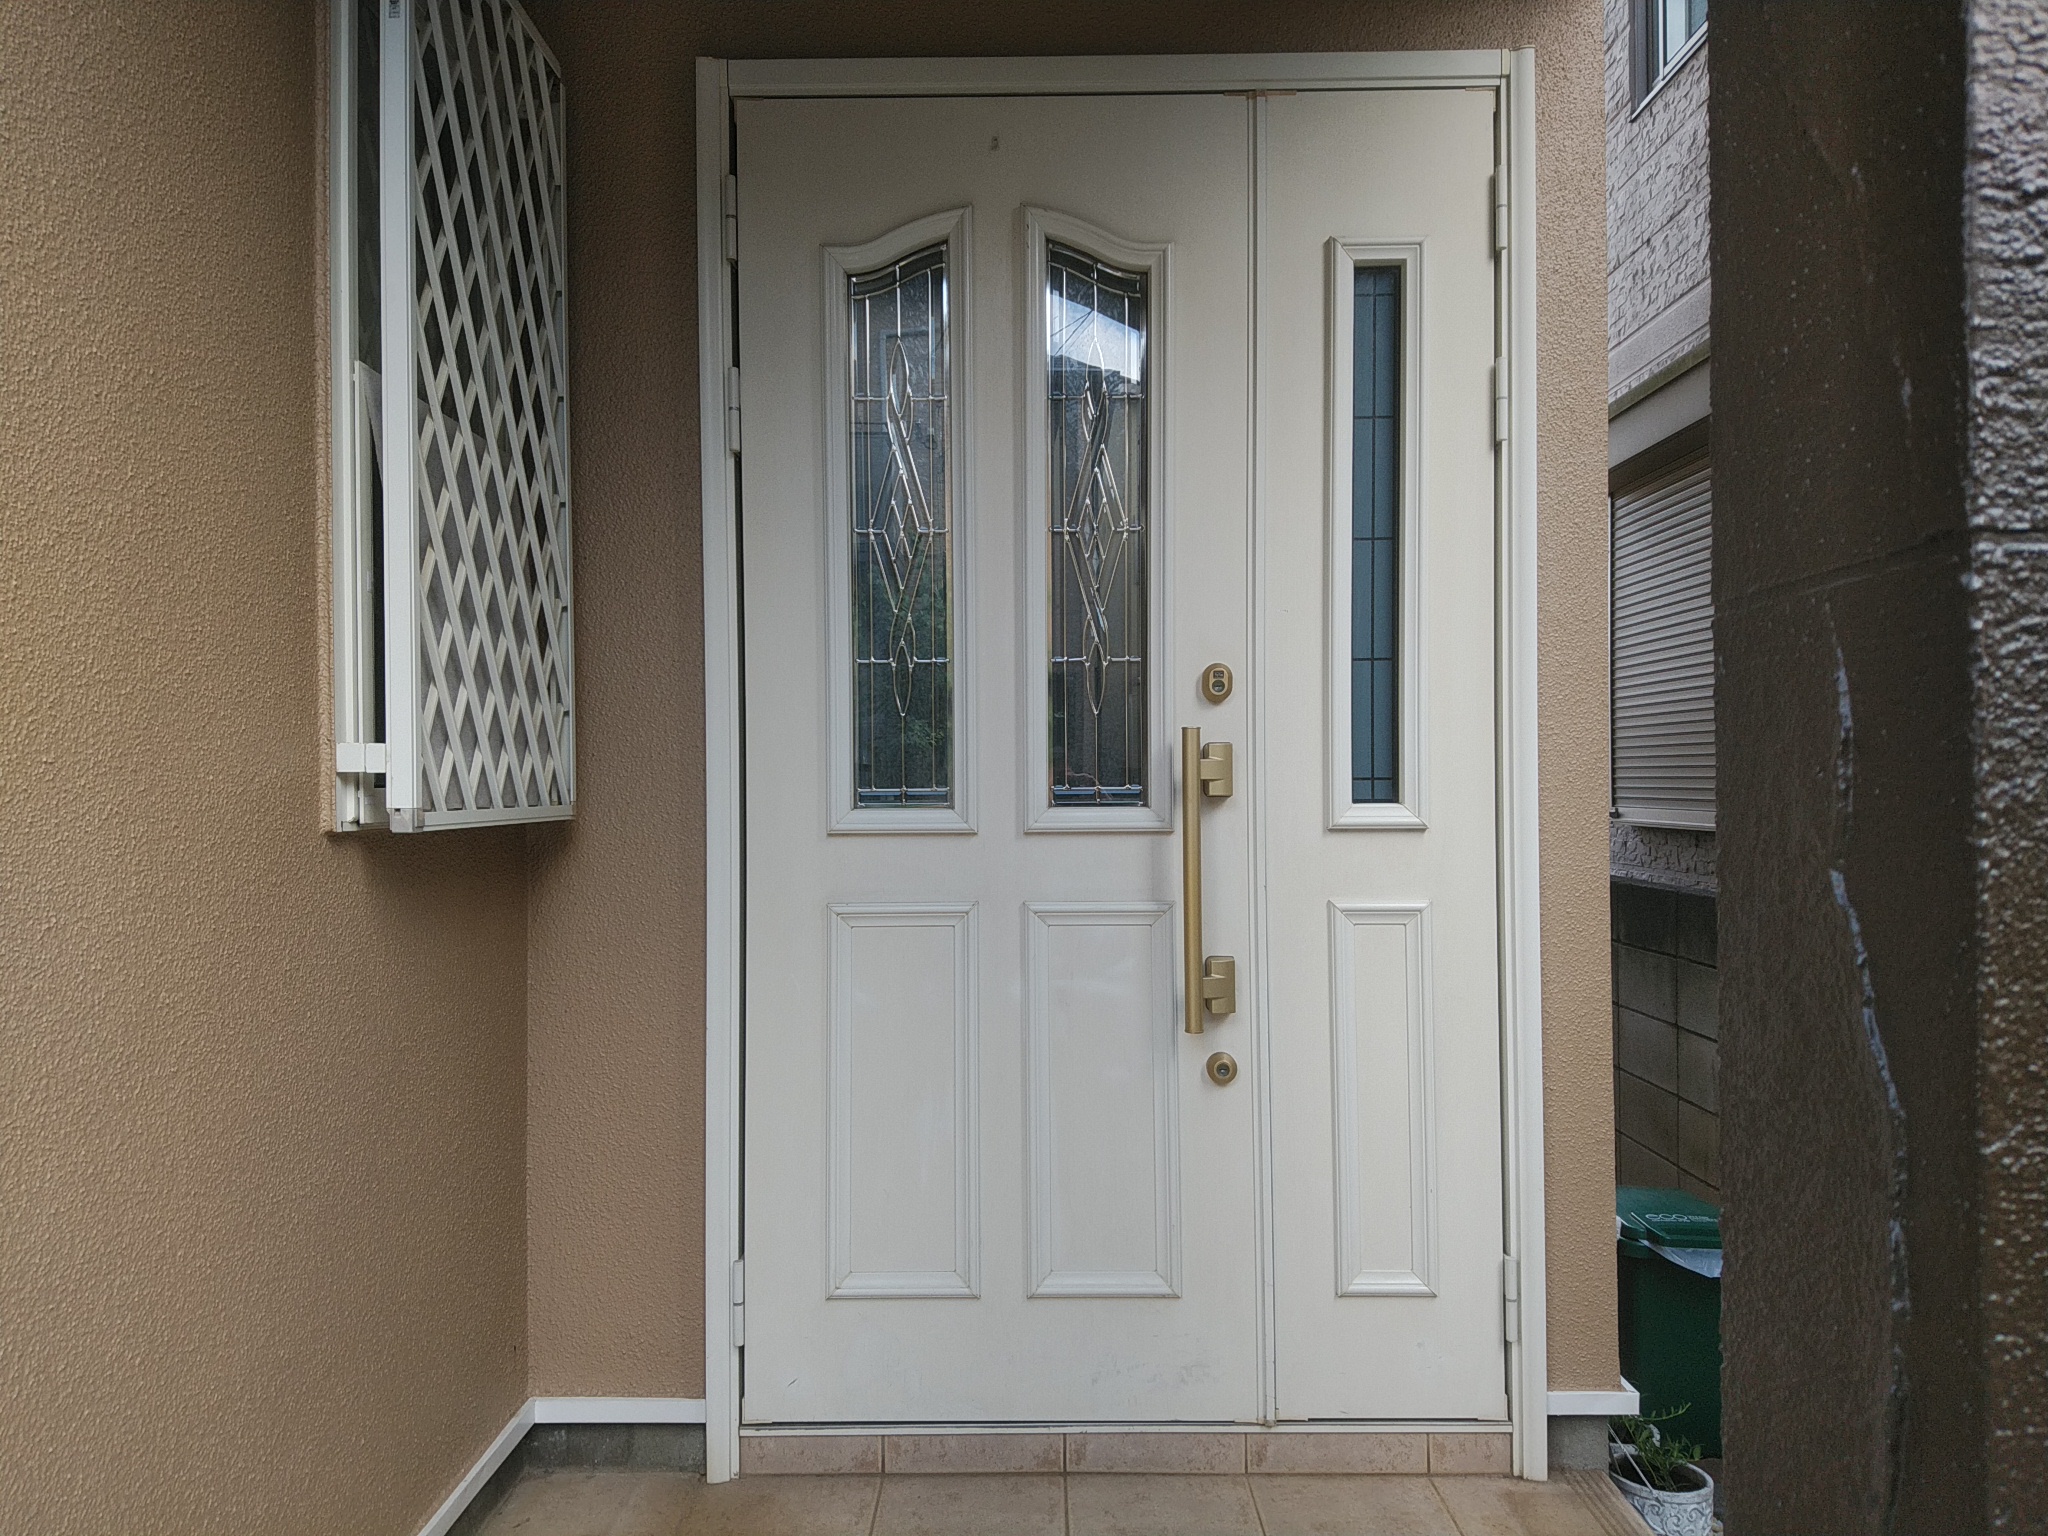 ホワイトのドアと木目調のドアの違いを見てください【YKKAPドアリモE09T】玄関ドアのリフォームなら玄関ドアマイスターへお任せください